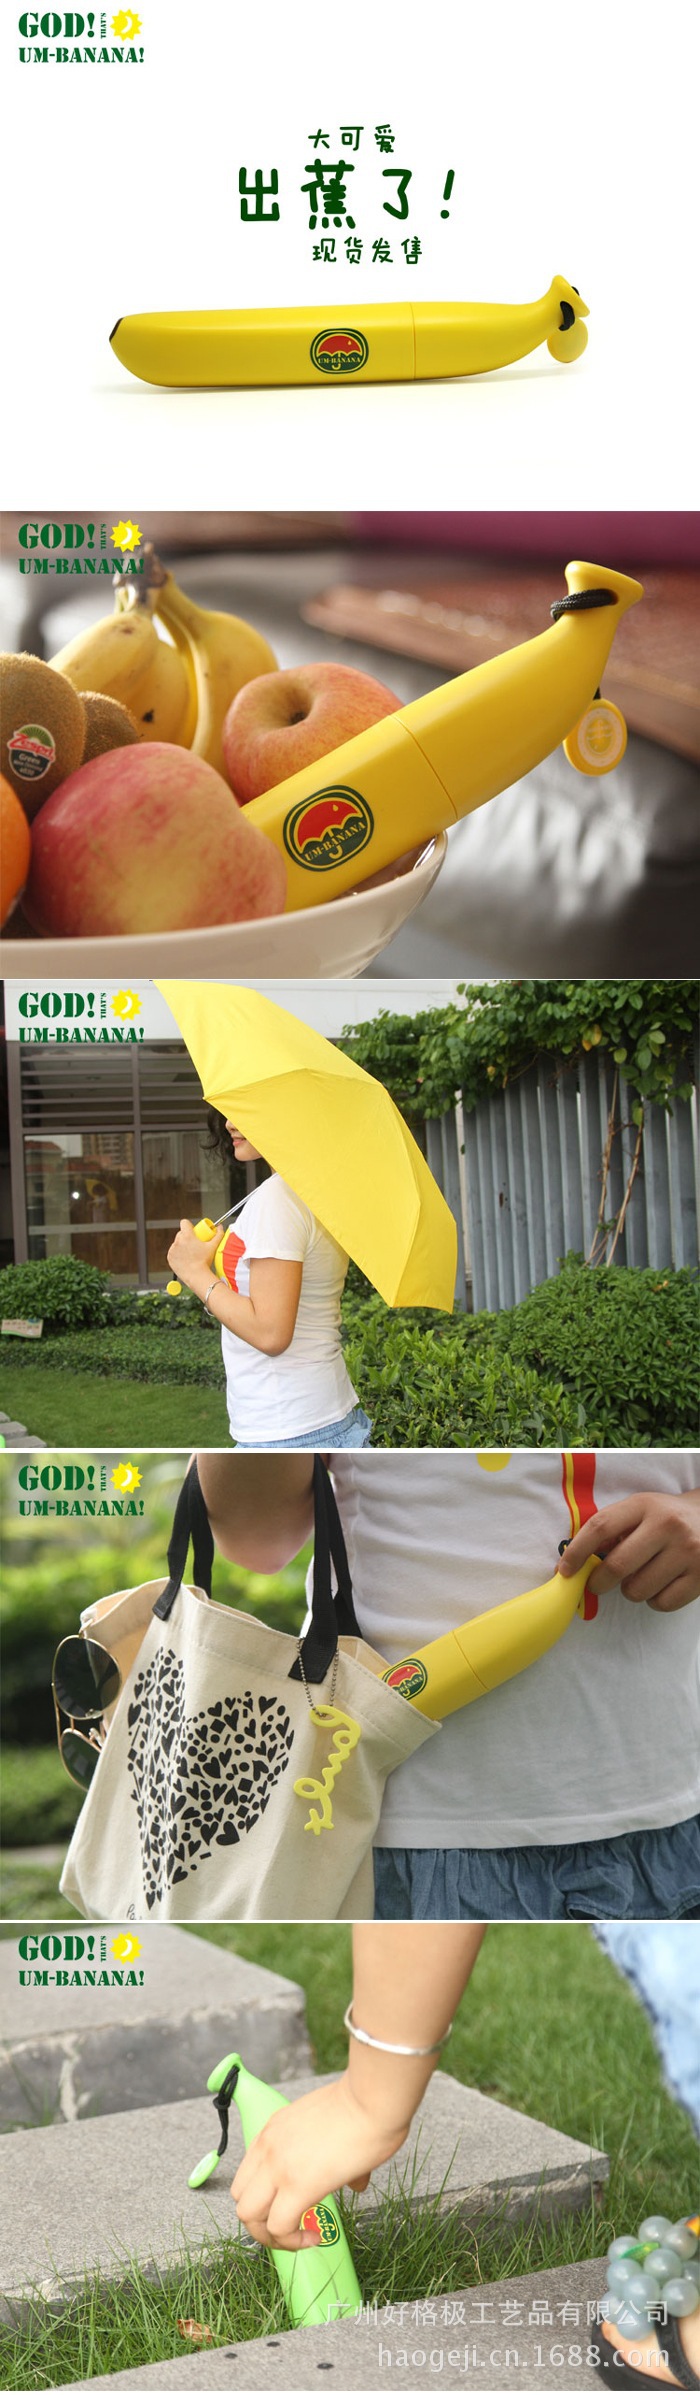 Banana umbrella (3)